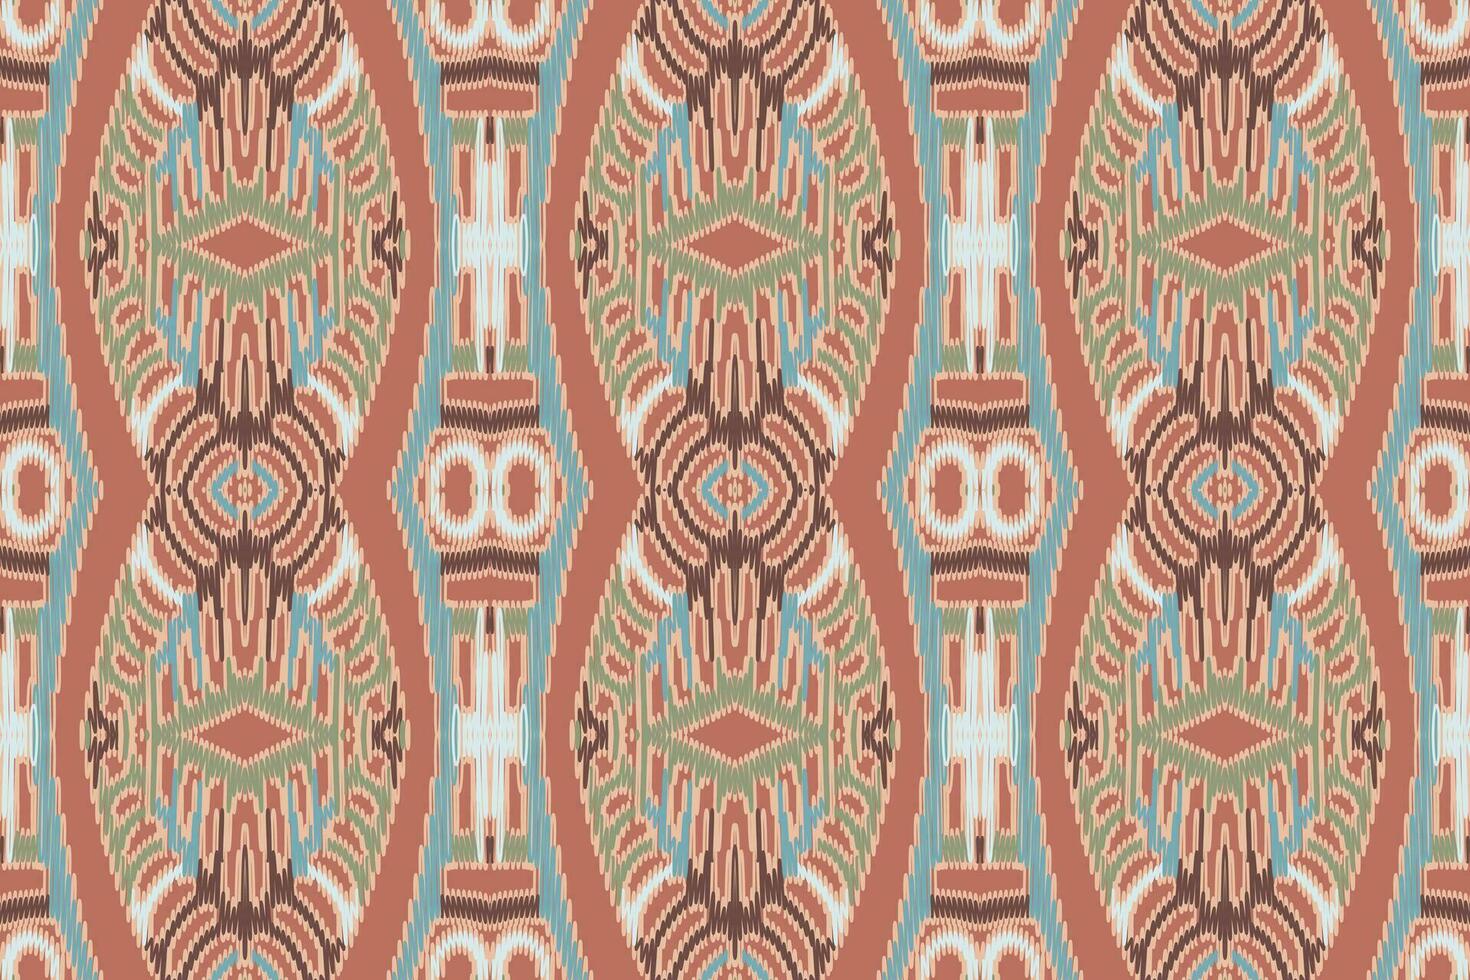 seda tela patola sari modelo sin costura australiano aborigen modelo motivo bordado, ikat bordado vector diseño para impresión tapiz floral kimono repetir modelo cordones Español motivo